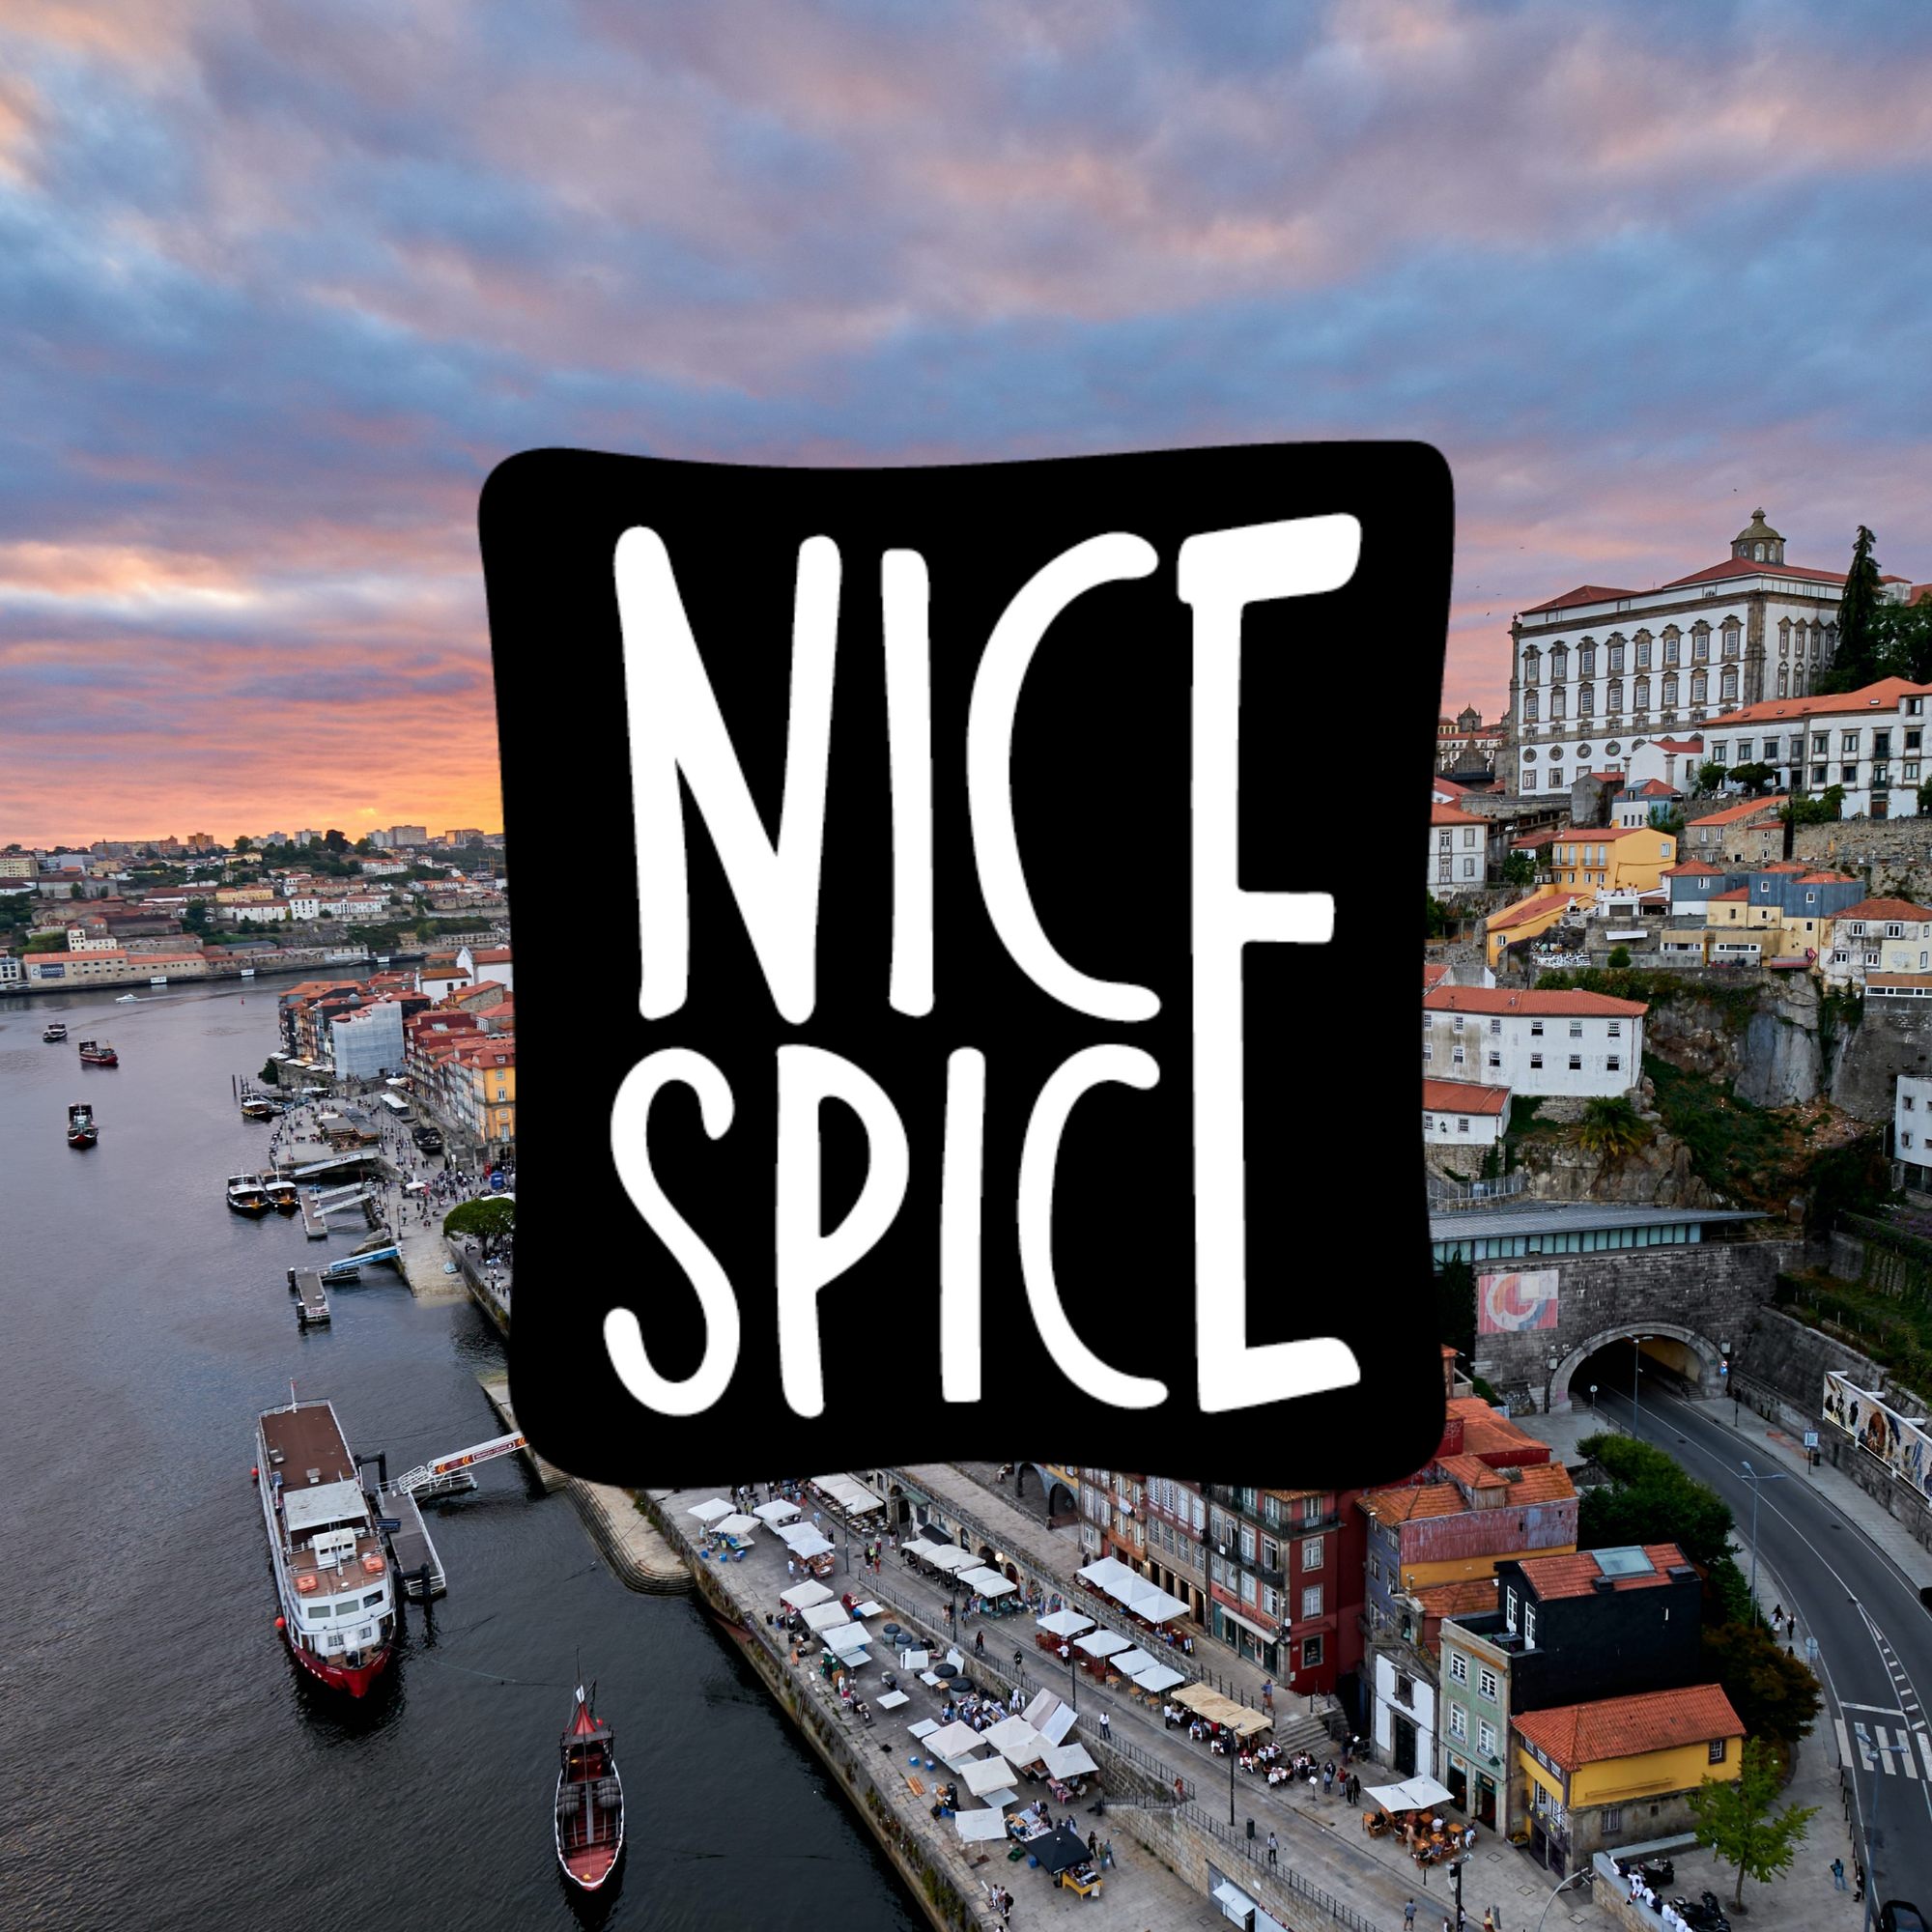 Porto - Nice Stadt, Nice Welt!